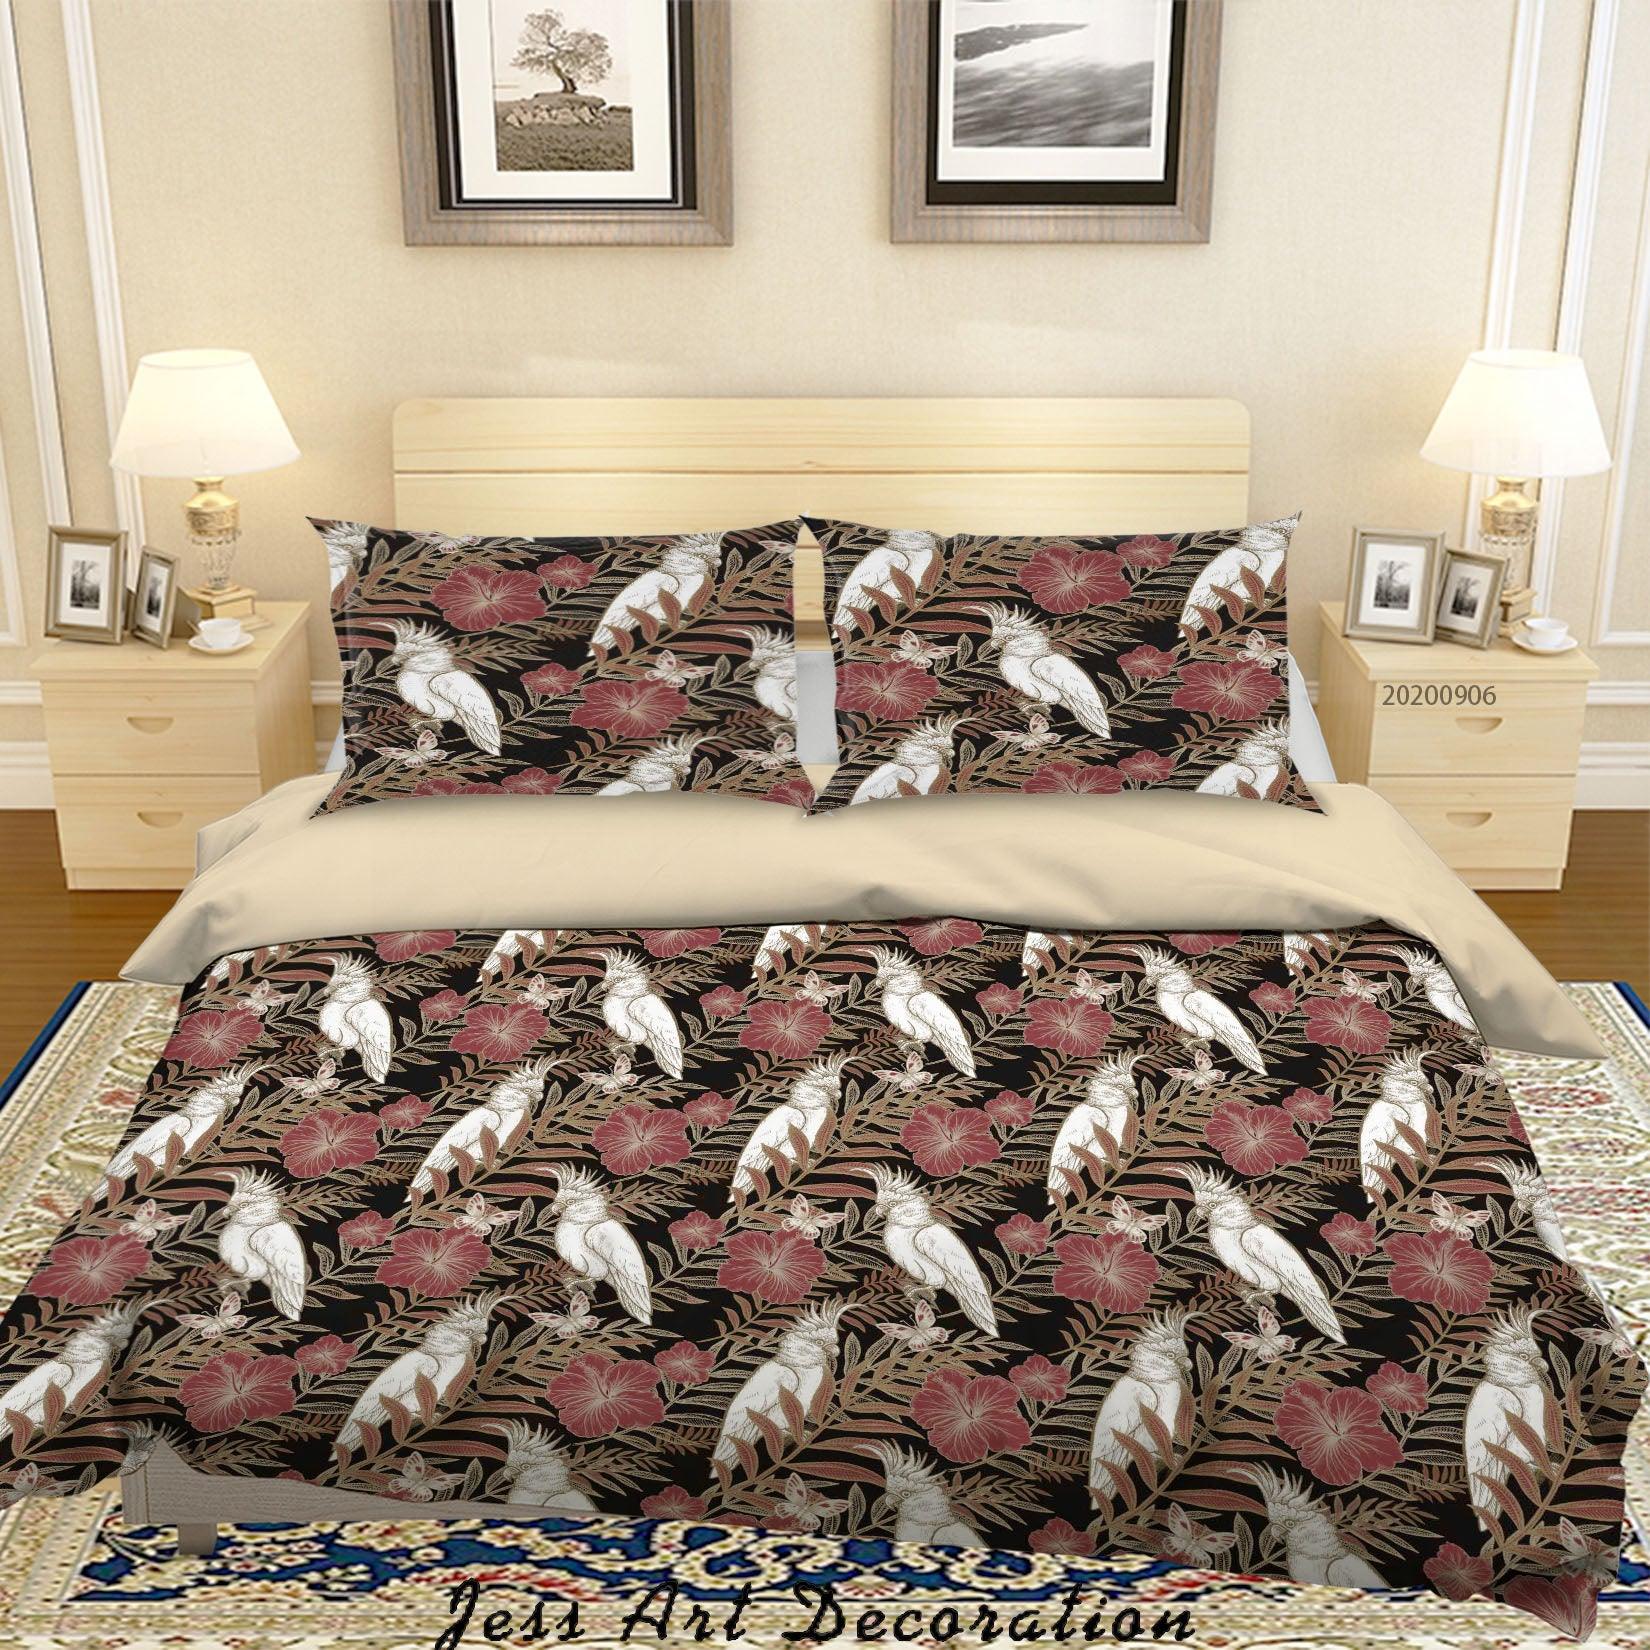 3D Vintage Leaves White Parrot Floral Pattern Quilt Cover Set Bedding Set Duvet Cover Pillowcases WJ 3650- Jess Art Decoration